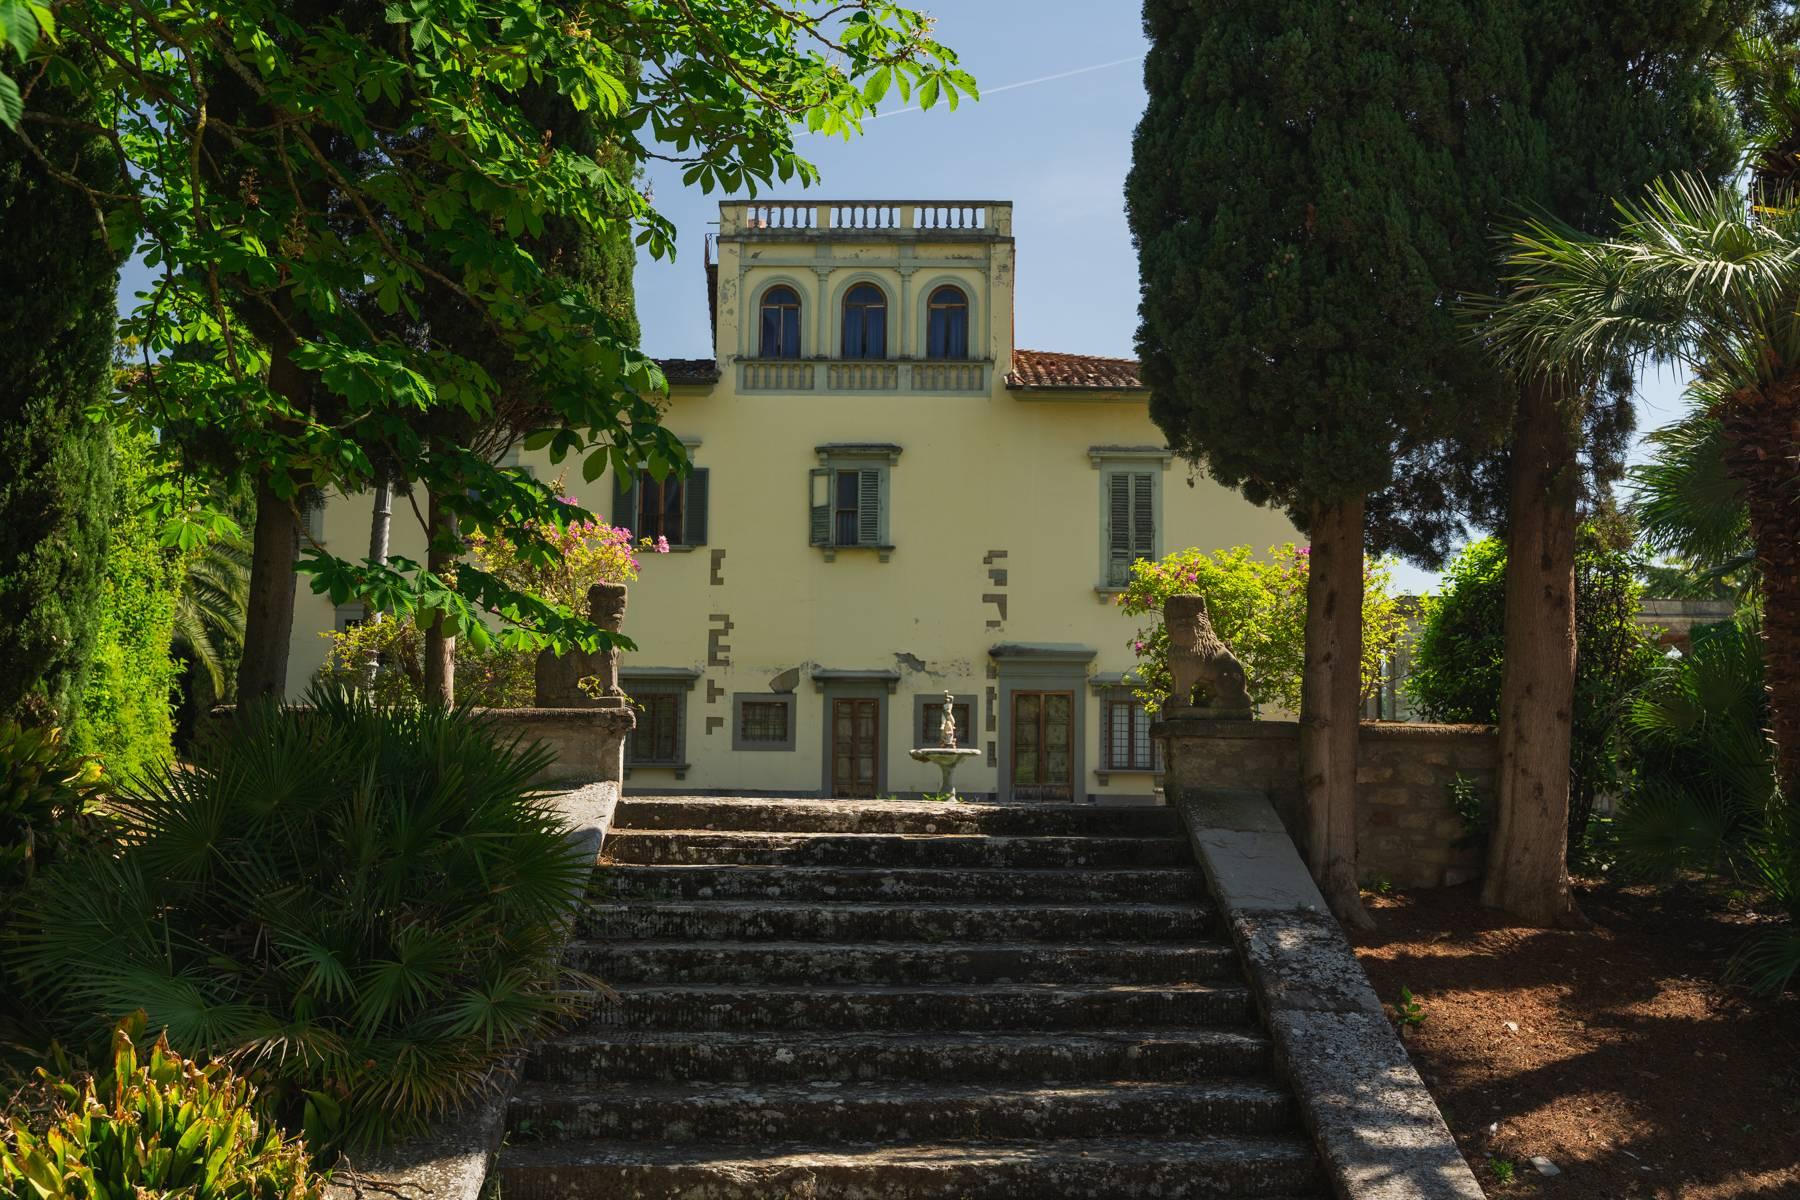 Elegante Villa aus dem 14. Jahrhundert mit einem Hektar Park in Florenz - 40